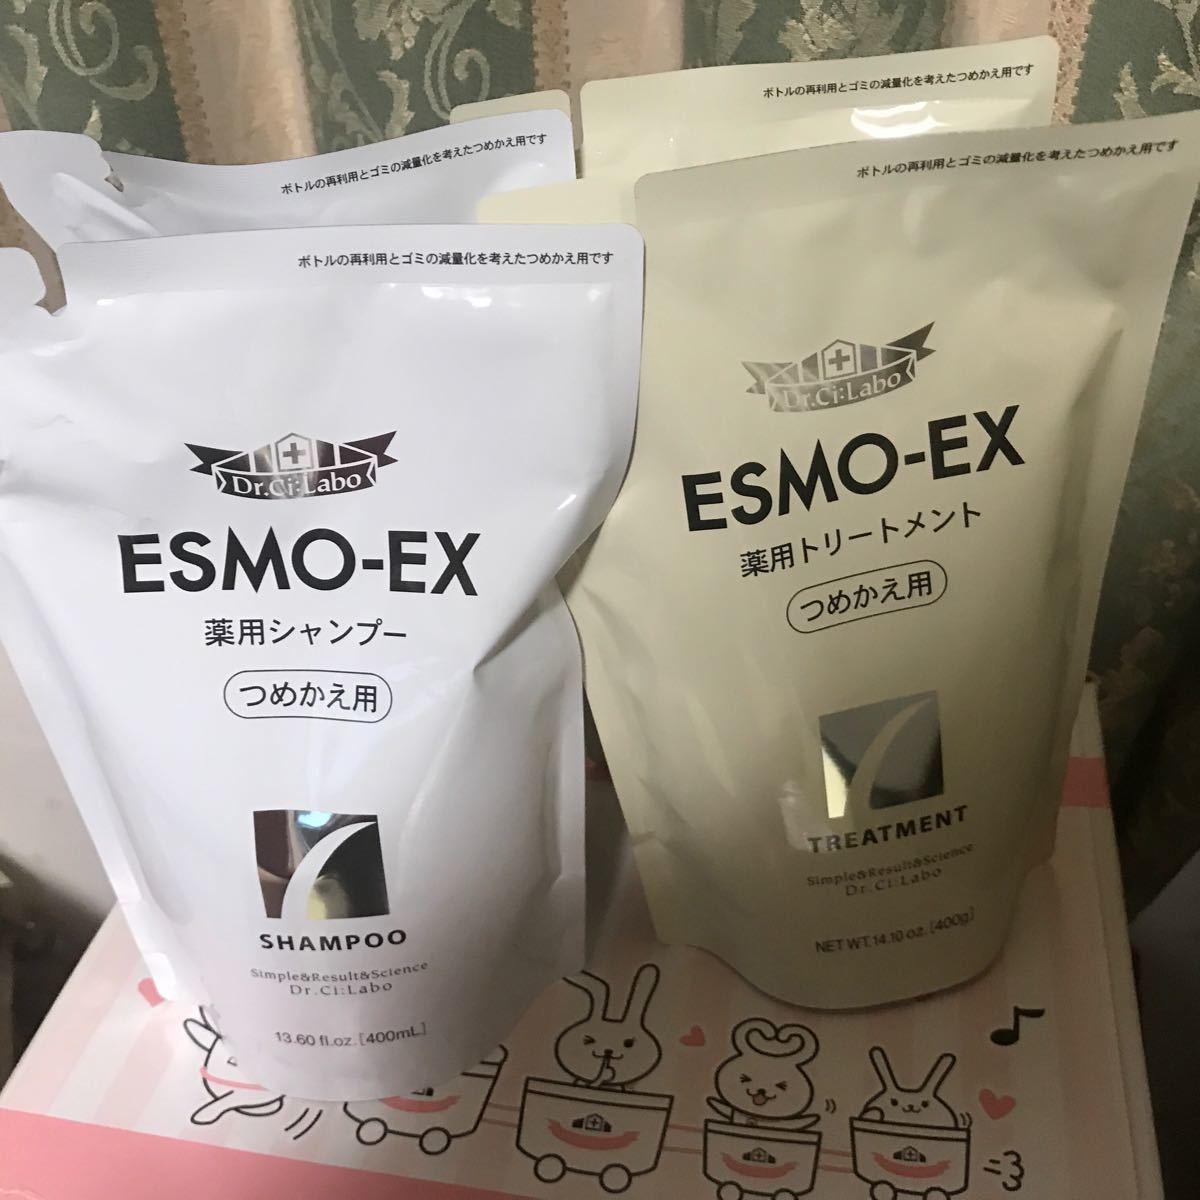 ESMO-EX エスモEX 詰替用 シャンプー、トリートメント(各2袋)合計4袋セット 新品未開封